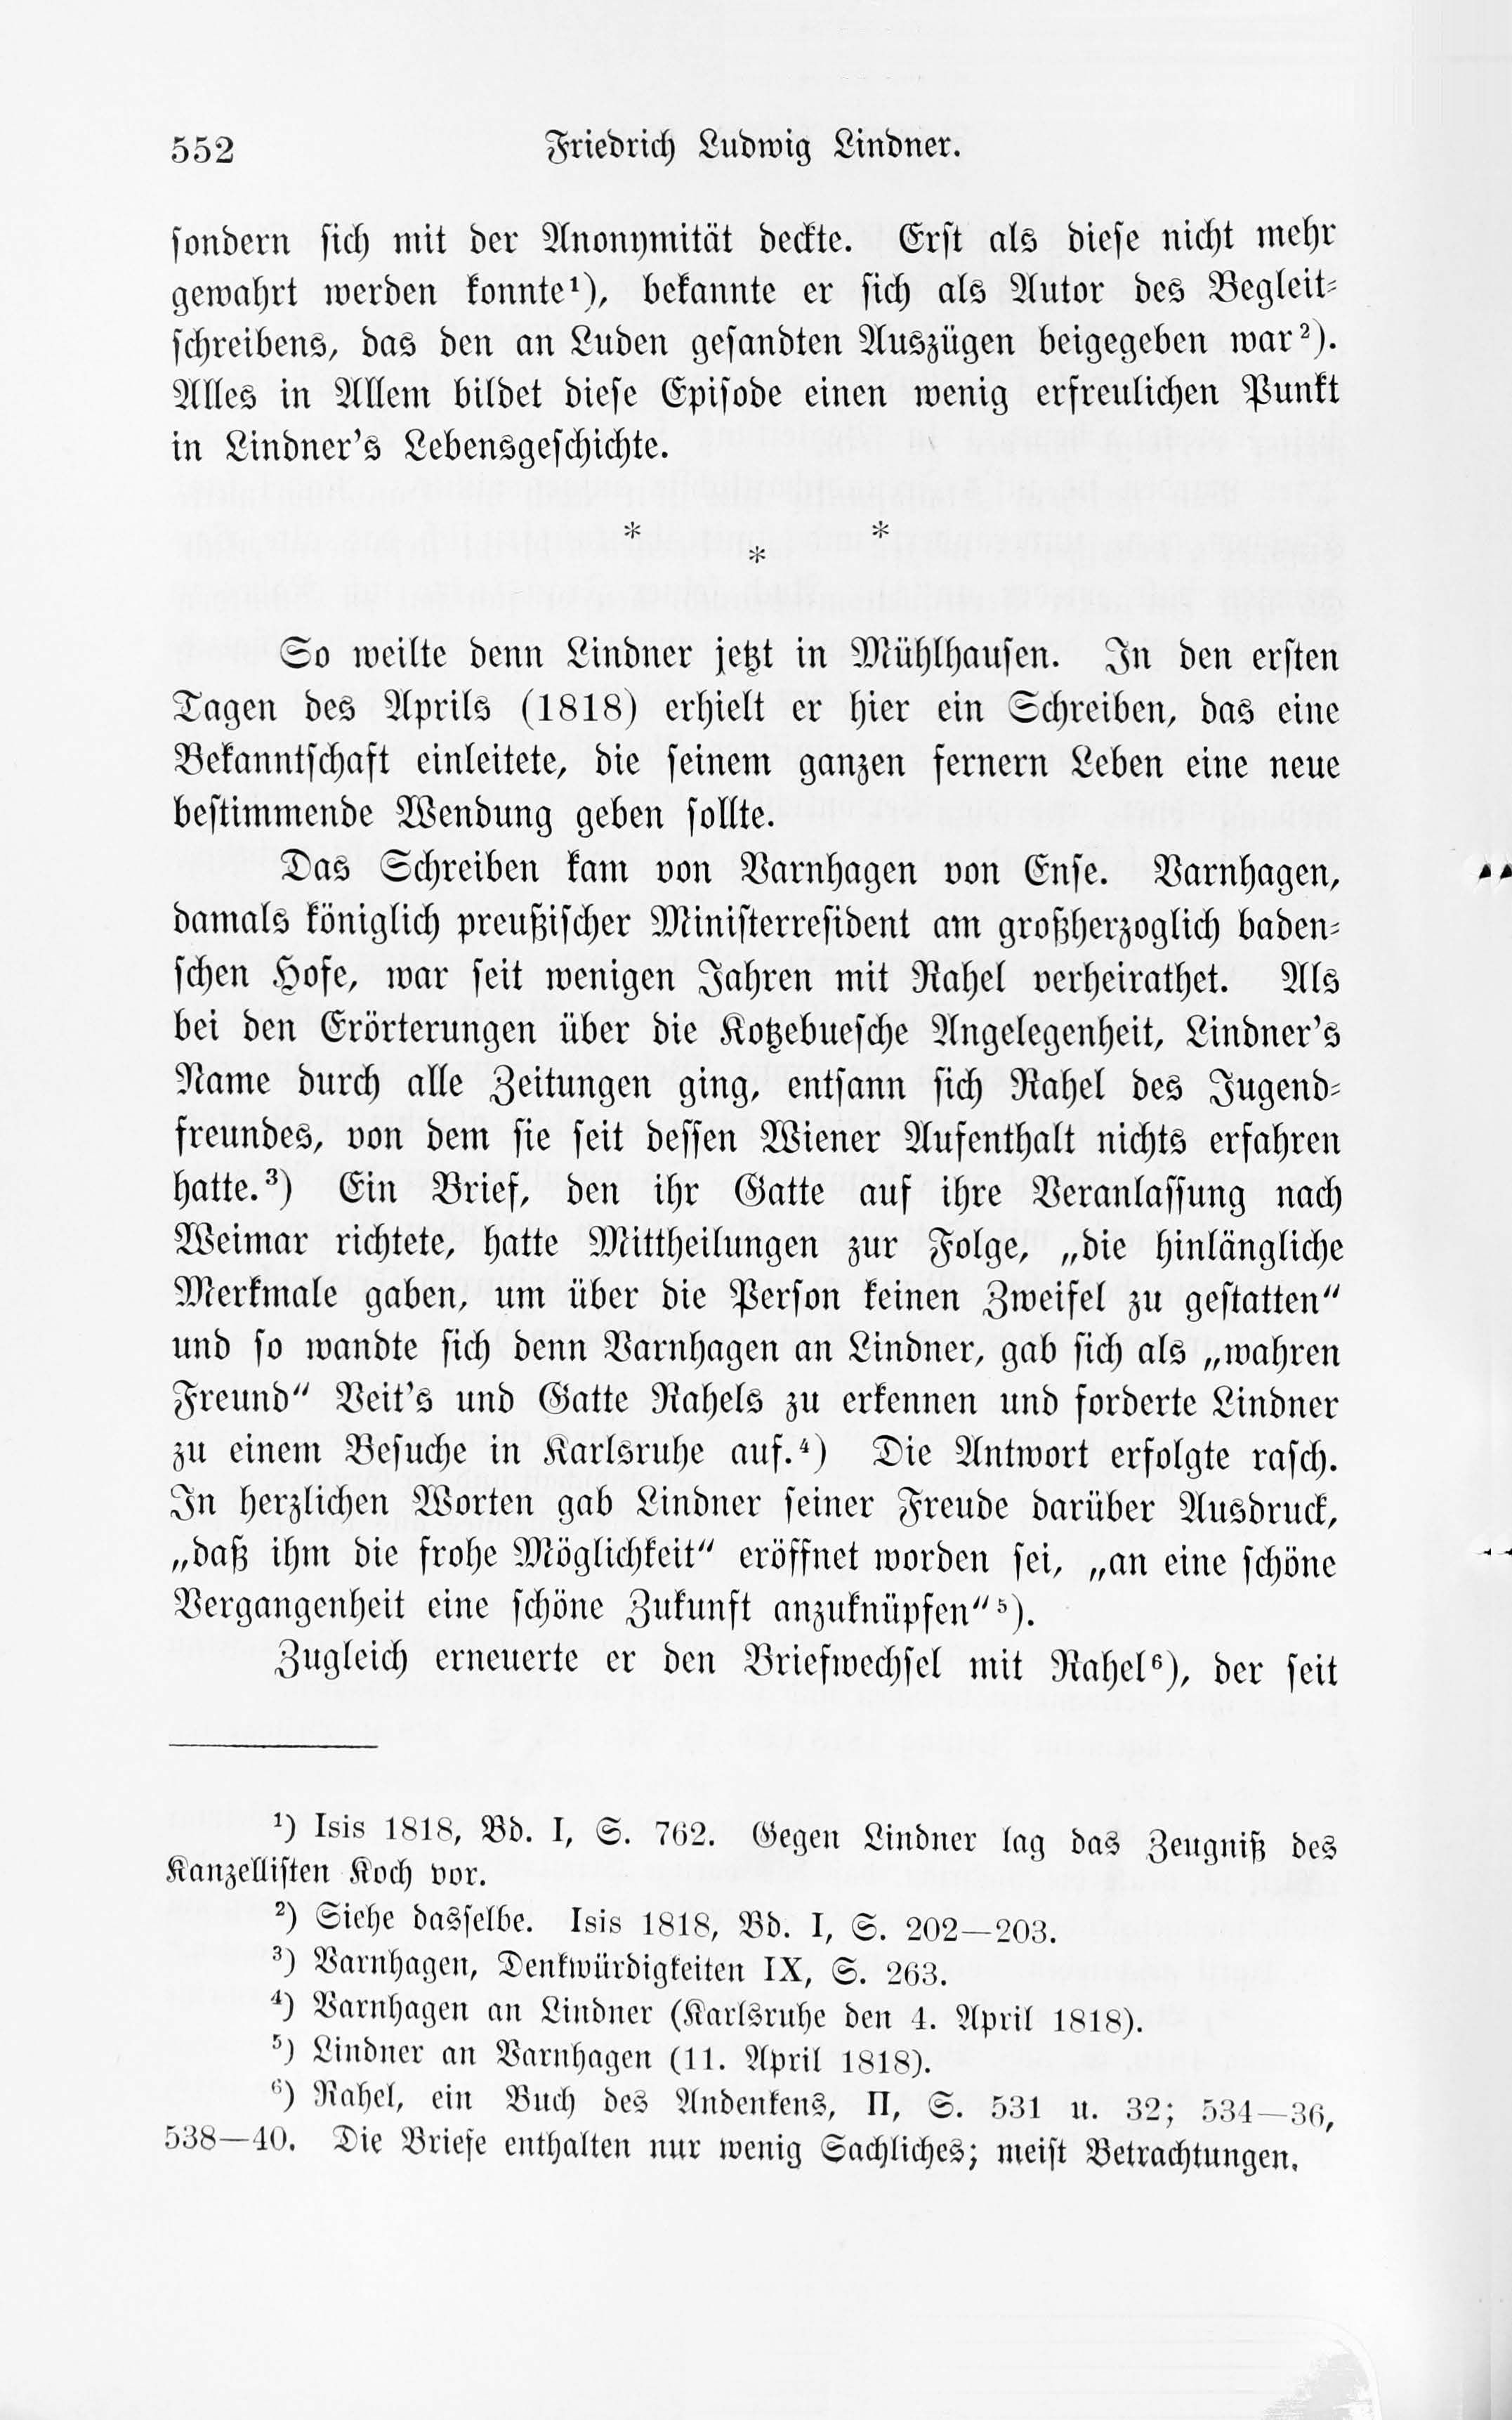 Leben und Schriften des Kurländers Friedrich Ludwig Lindner [1] (1895) | 22. Haupttext